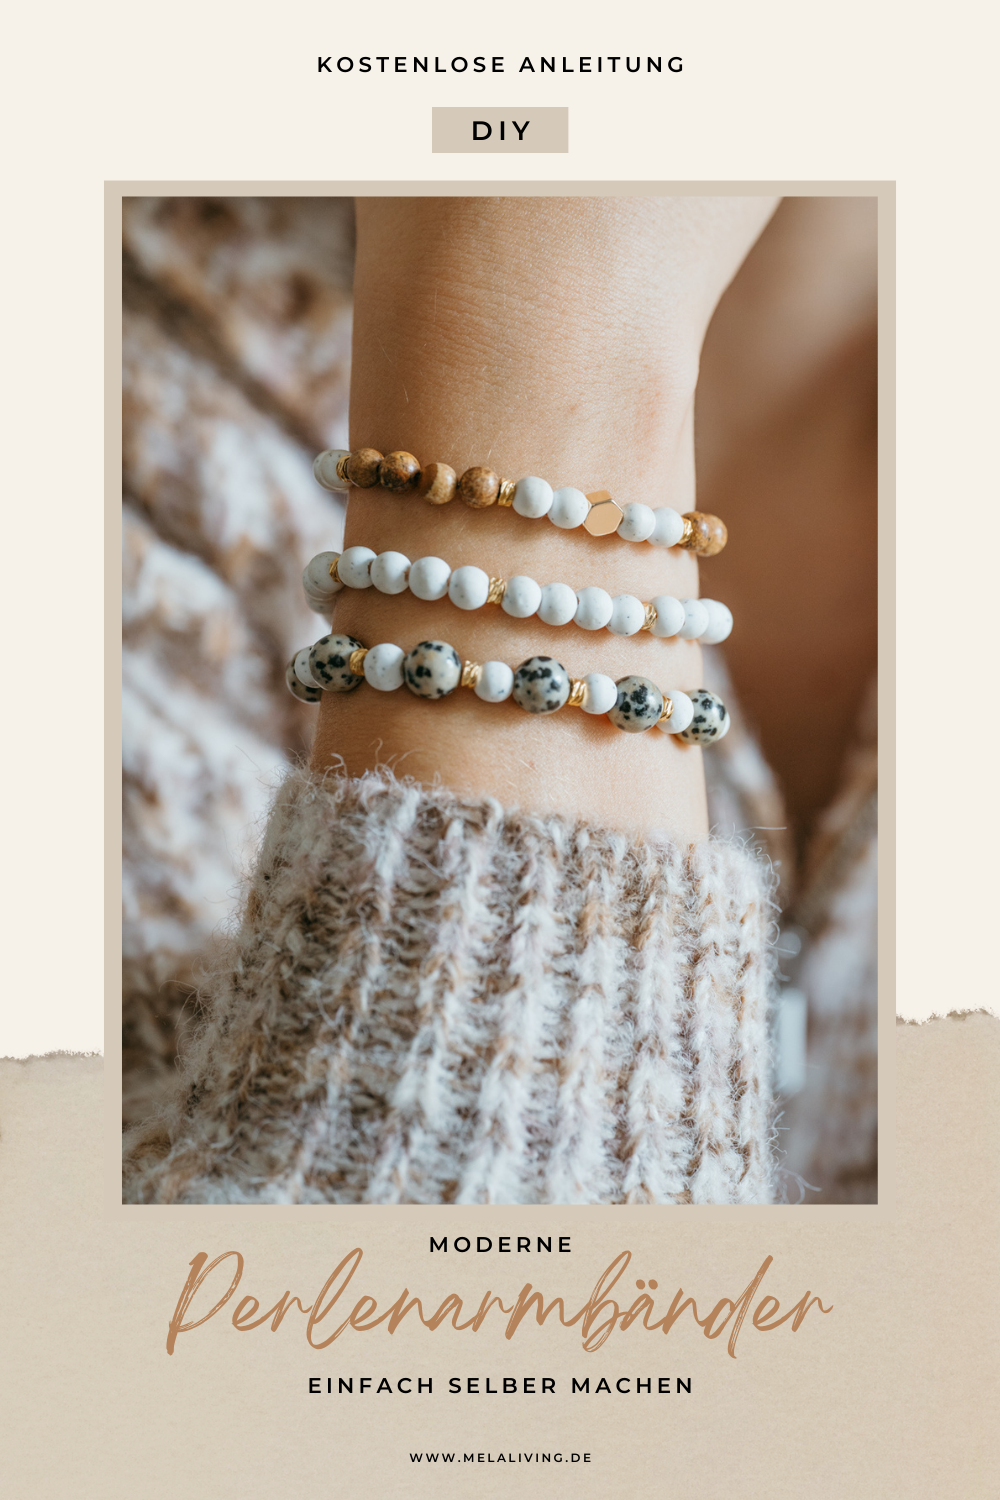 Bei diesen selbstgemachten Perlenarmbändern verwende ich weiße Perlen und goldene Zwischenperlen und bringe durch andersfarbige Perlen etwas Abwechslung rein. Hier geht’s zur kostenlosen DIY Anleitung! #perlenschmuck #diy #armband @melaliving 